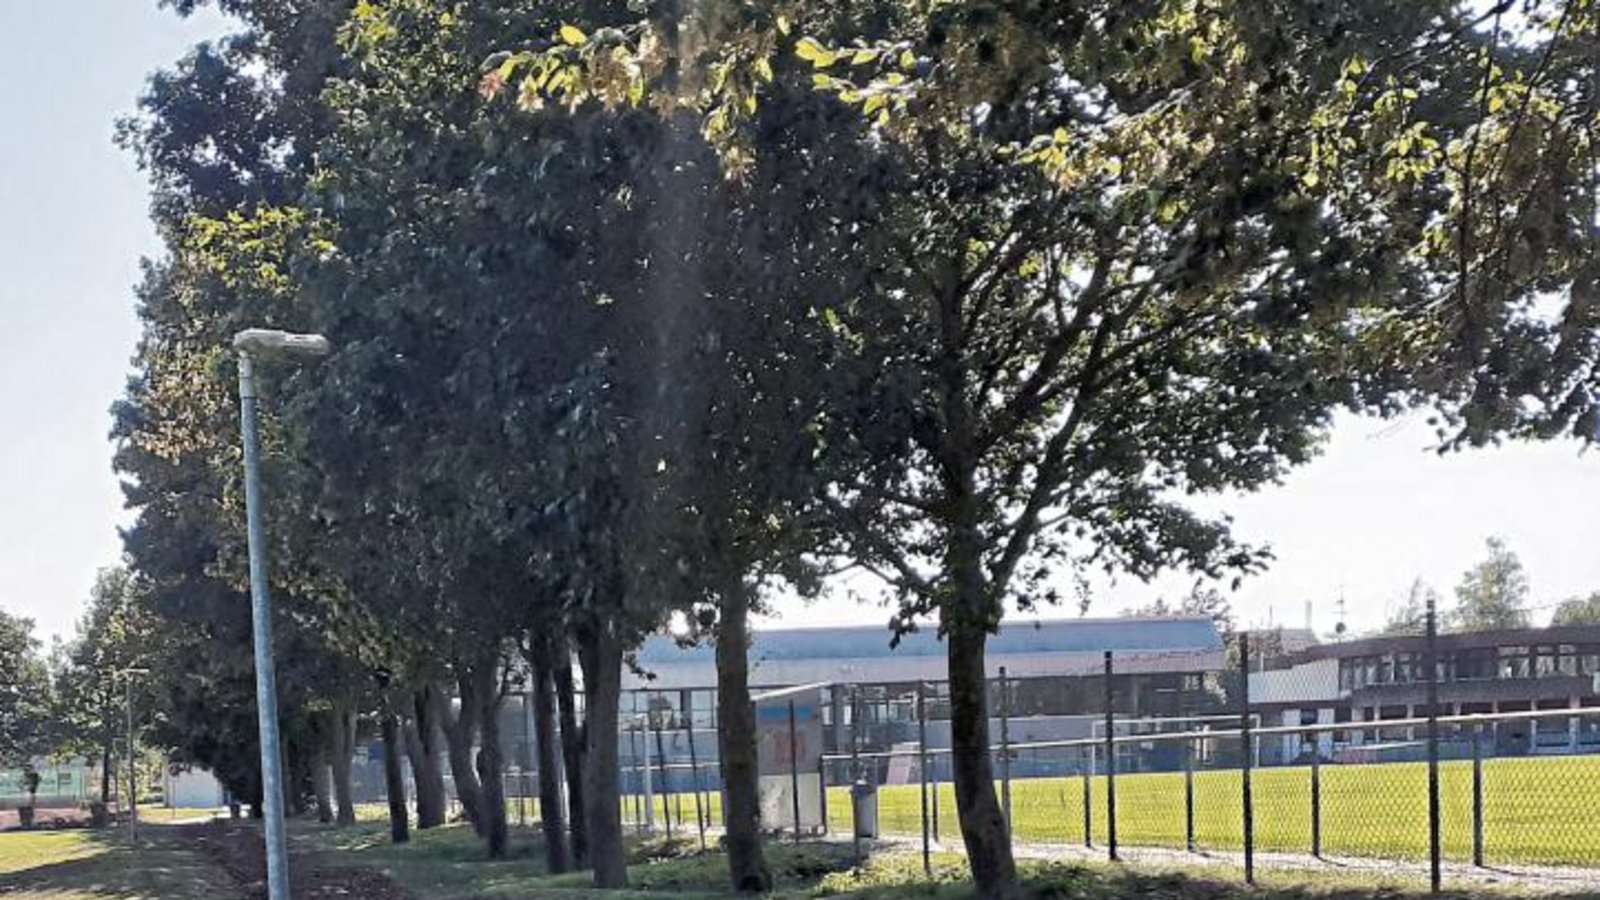 Eine Pumptrack-Anlage, Outdoor-Fitnessgeräte und ein Inklusions-Spielplatz sollen das Sersheimer Sportzentrum in naher Zukunft noch attraktiver machen.  Foto: Glemser